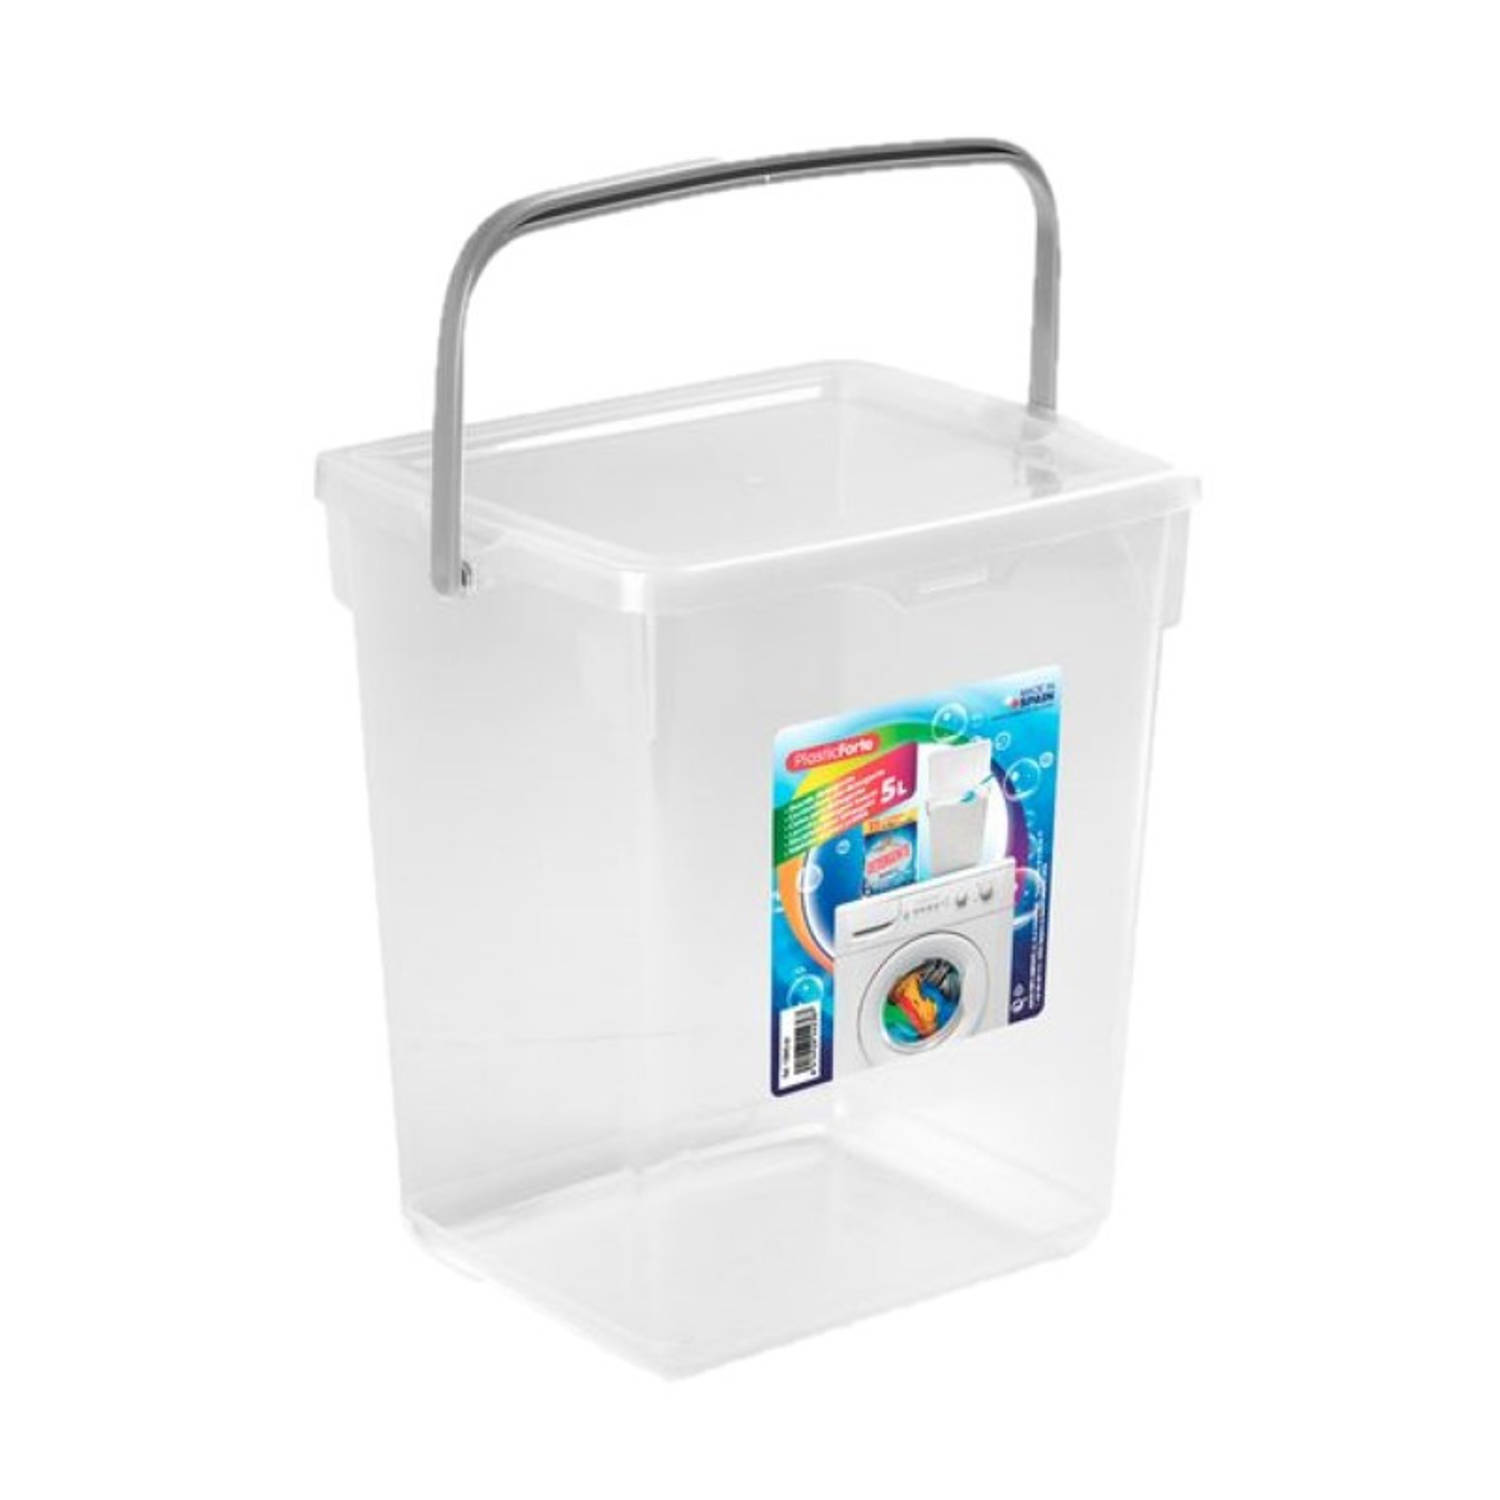 2x stuks afvalbakken/opslagboxen/emmers kunststof met deksel transparant 5 liter 20 x 17 x 23 cm - Prullenbakken